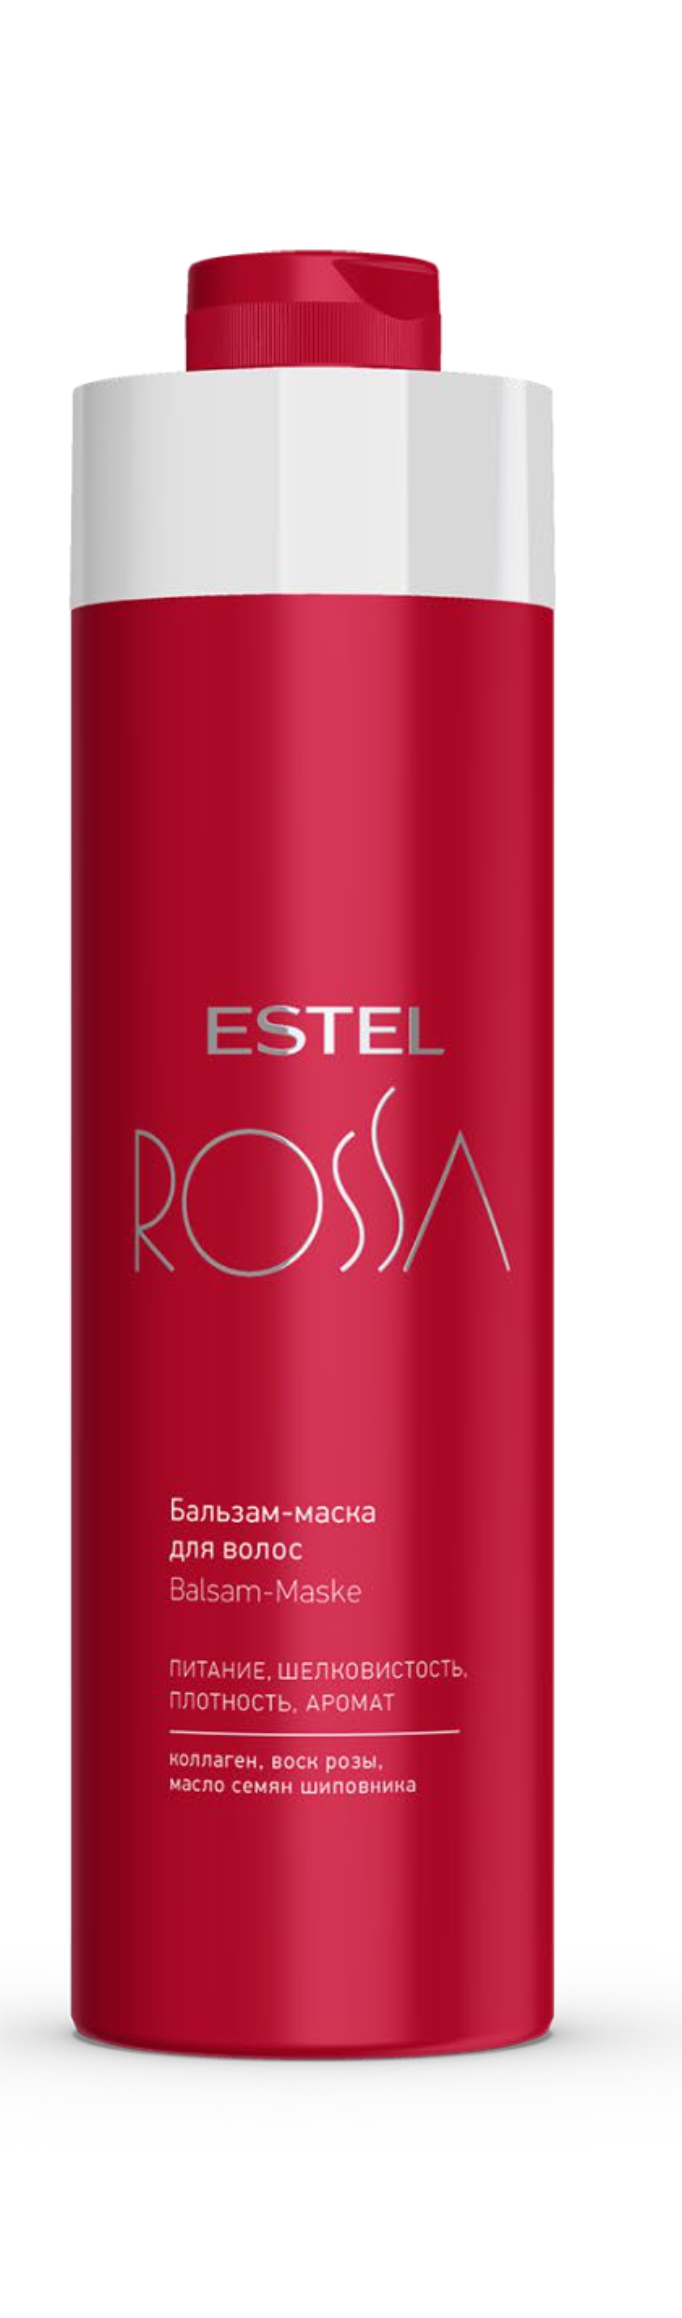 Бальзам-маска для волос ESTEL ROSSA 1000 мл